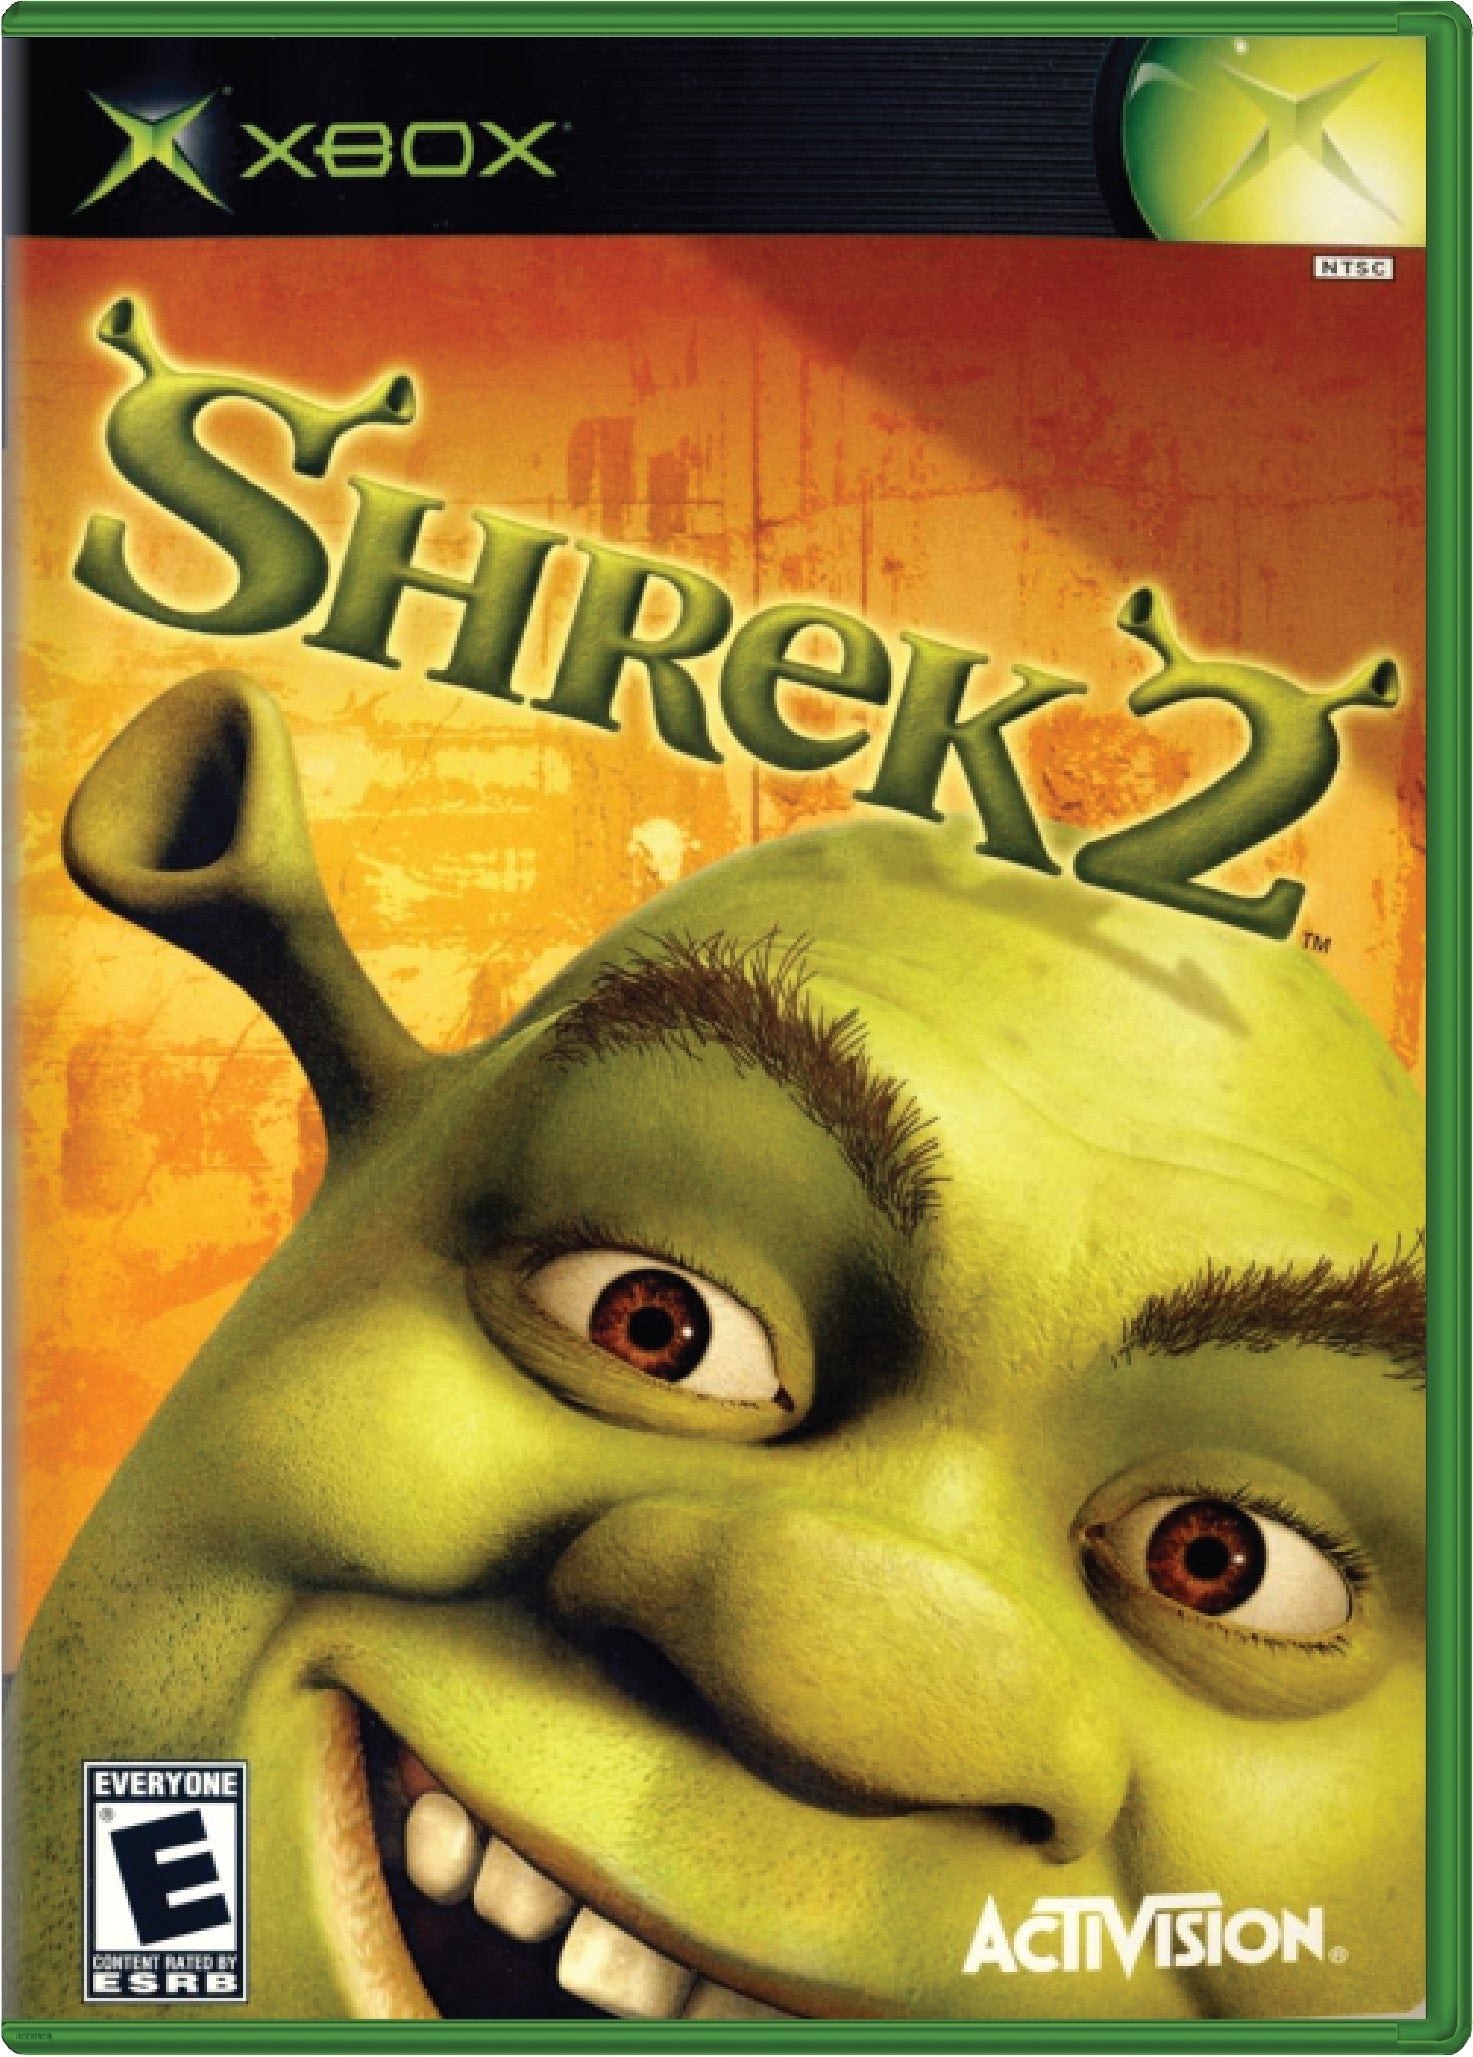 Shrek 2 Cover Art